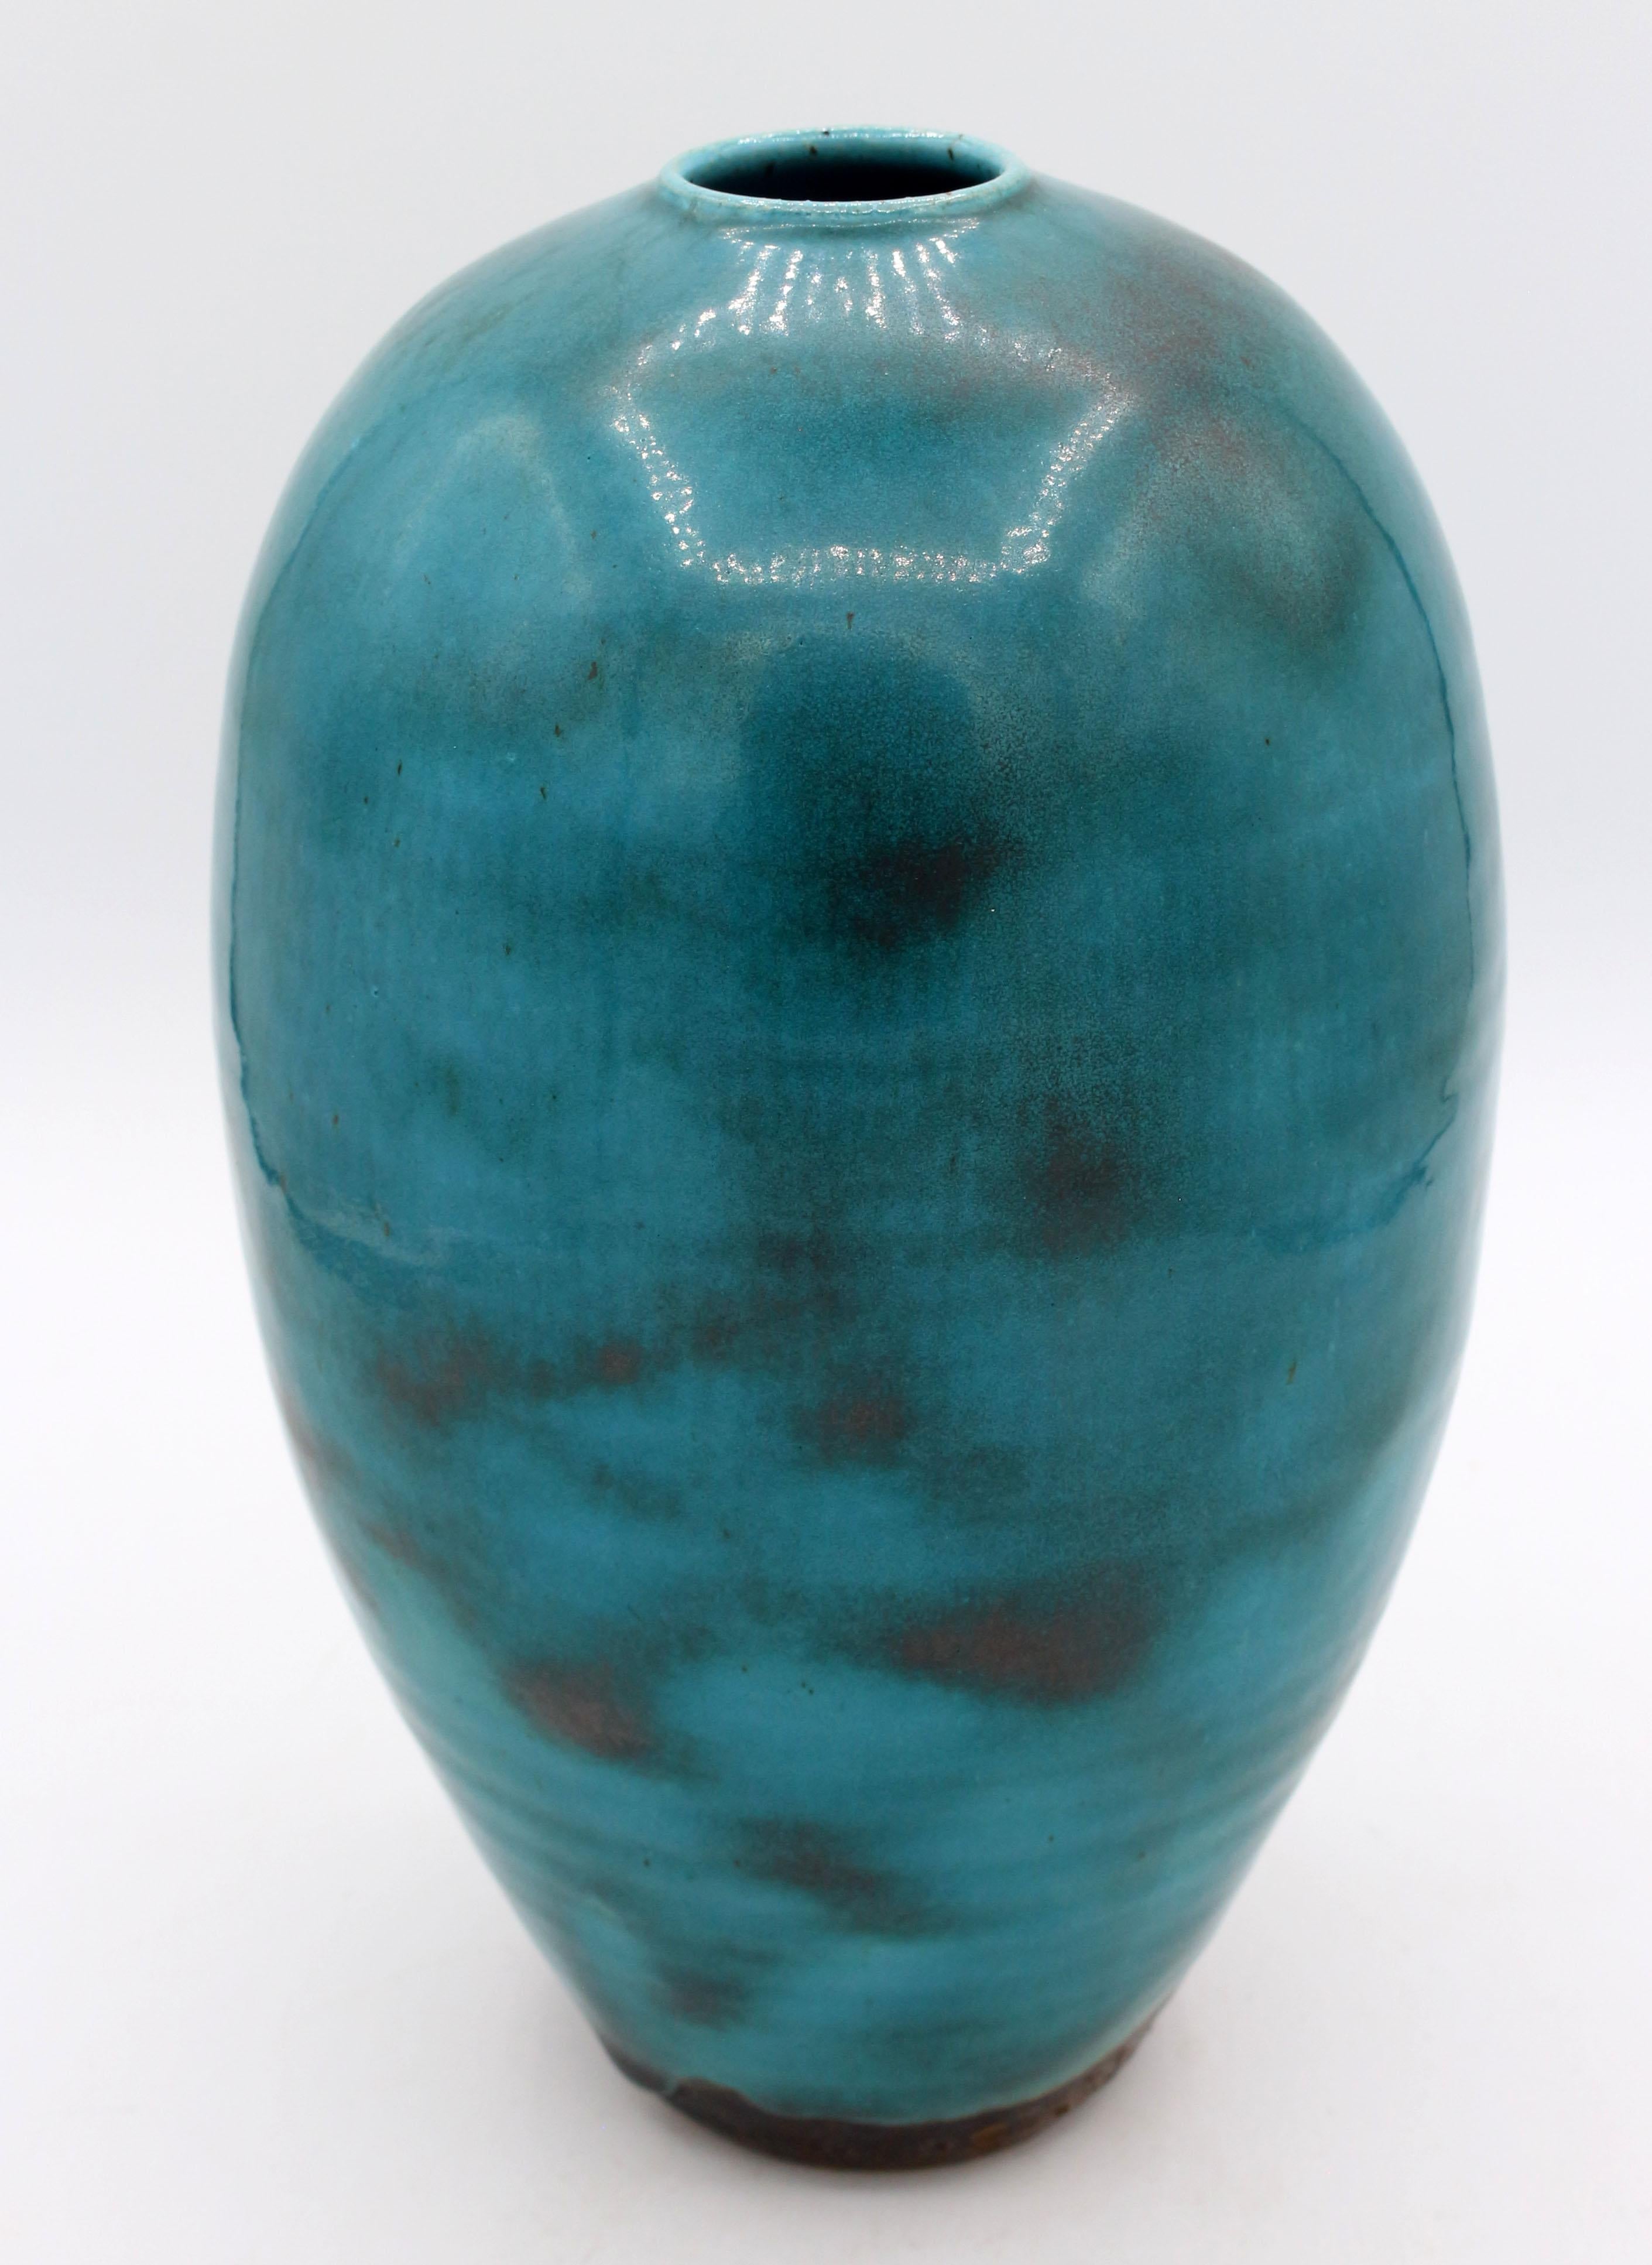 1997 Mei Ping Oriental Translation blue glazed vase by Ben Owen III. Rippling copper through the glaze.
9